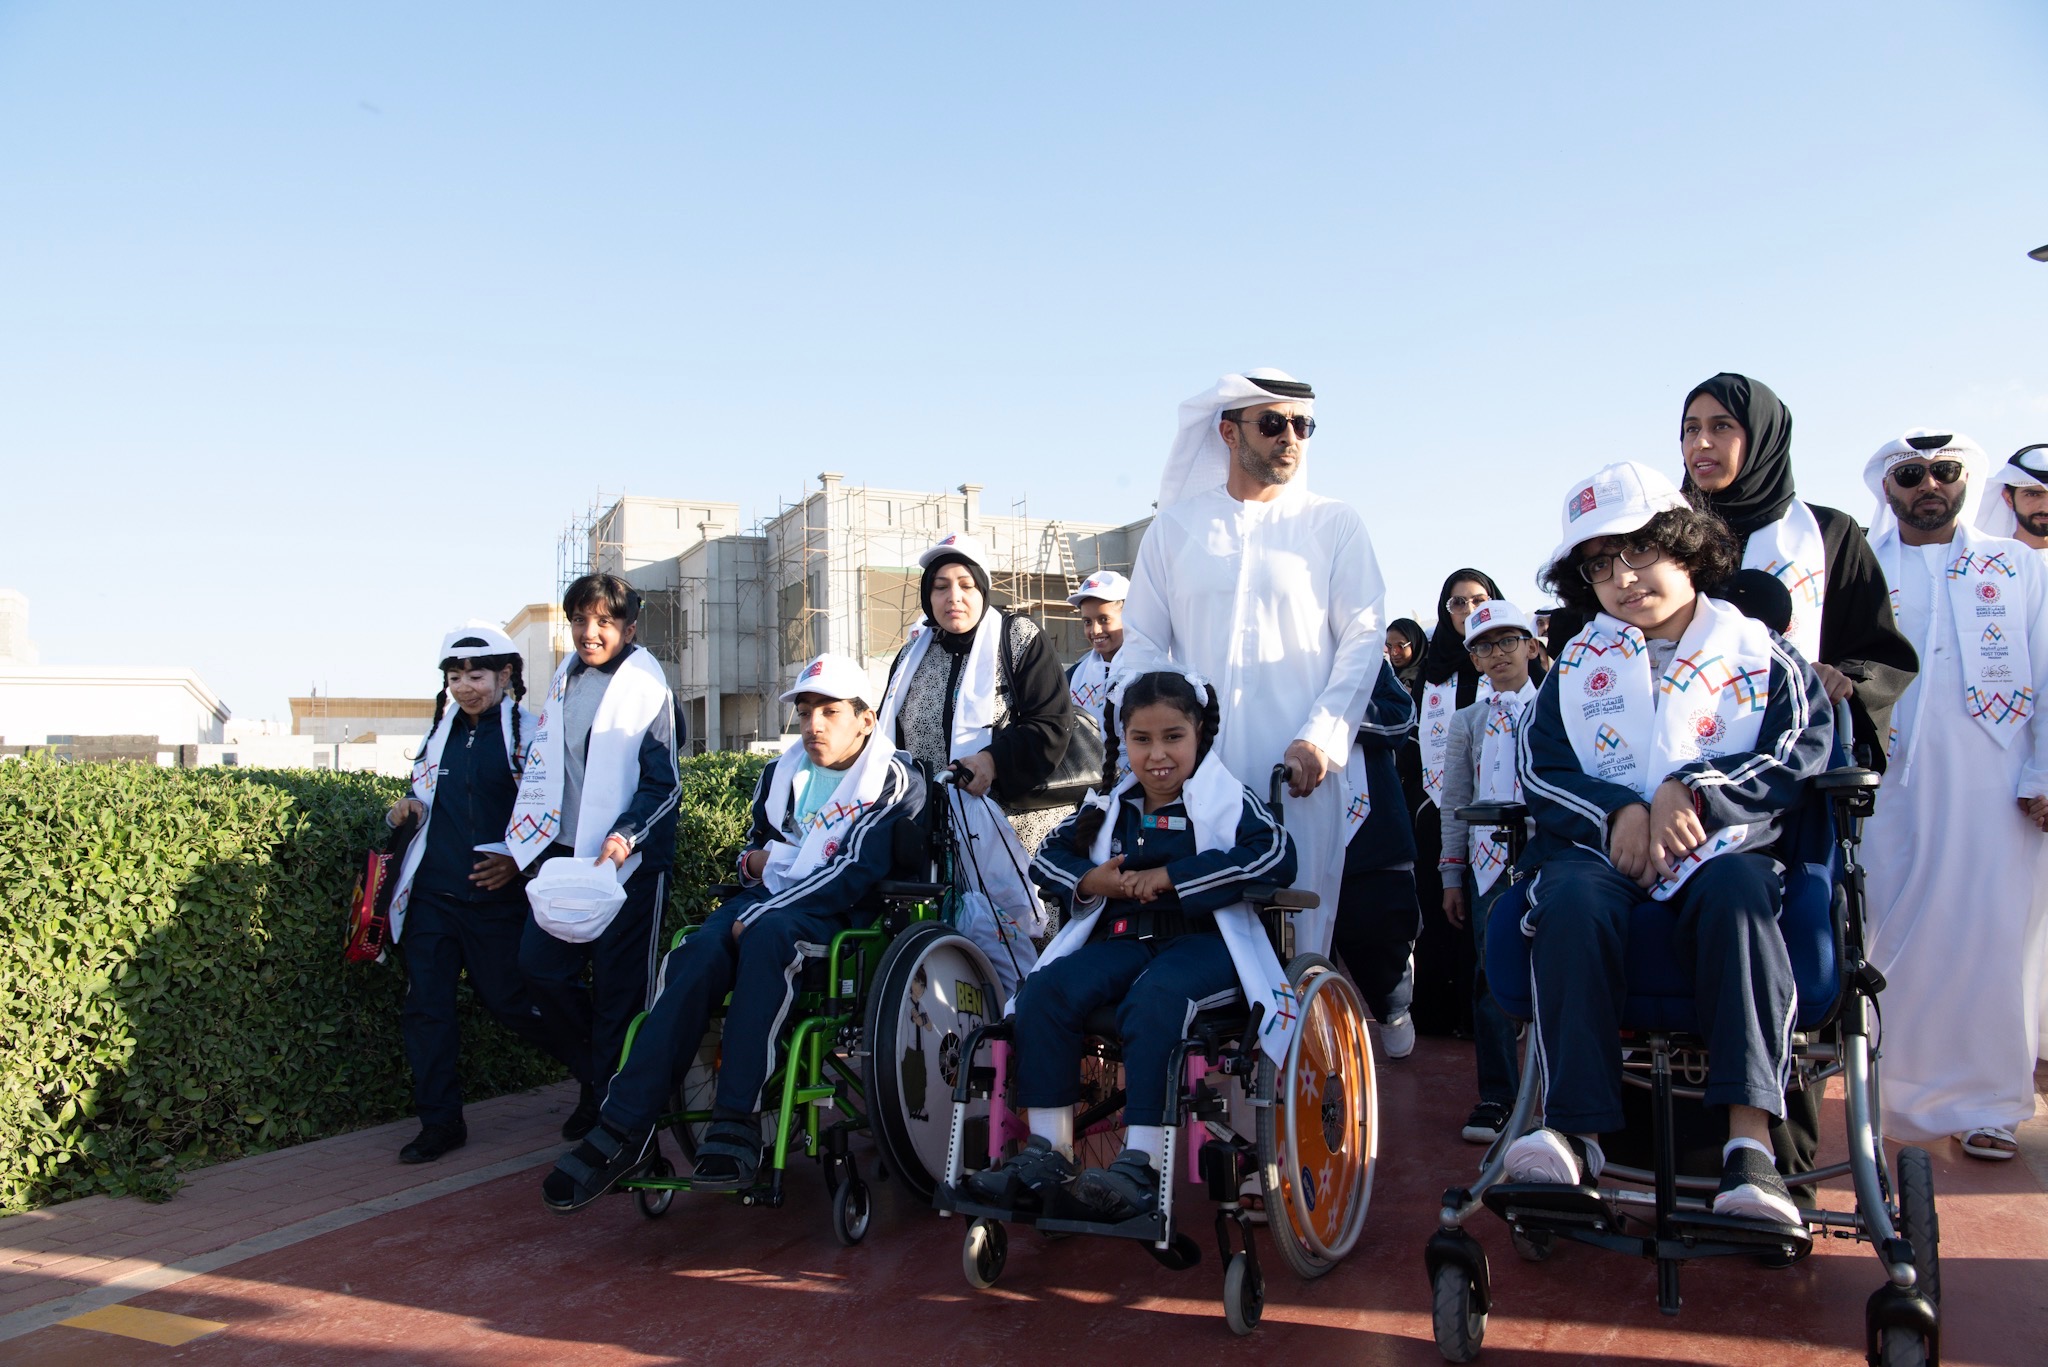 ‫عبدالعزيز النعيمي يشارك أصحاب الهمم في مبادرة "نمشي معاً" في عجمان‬